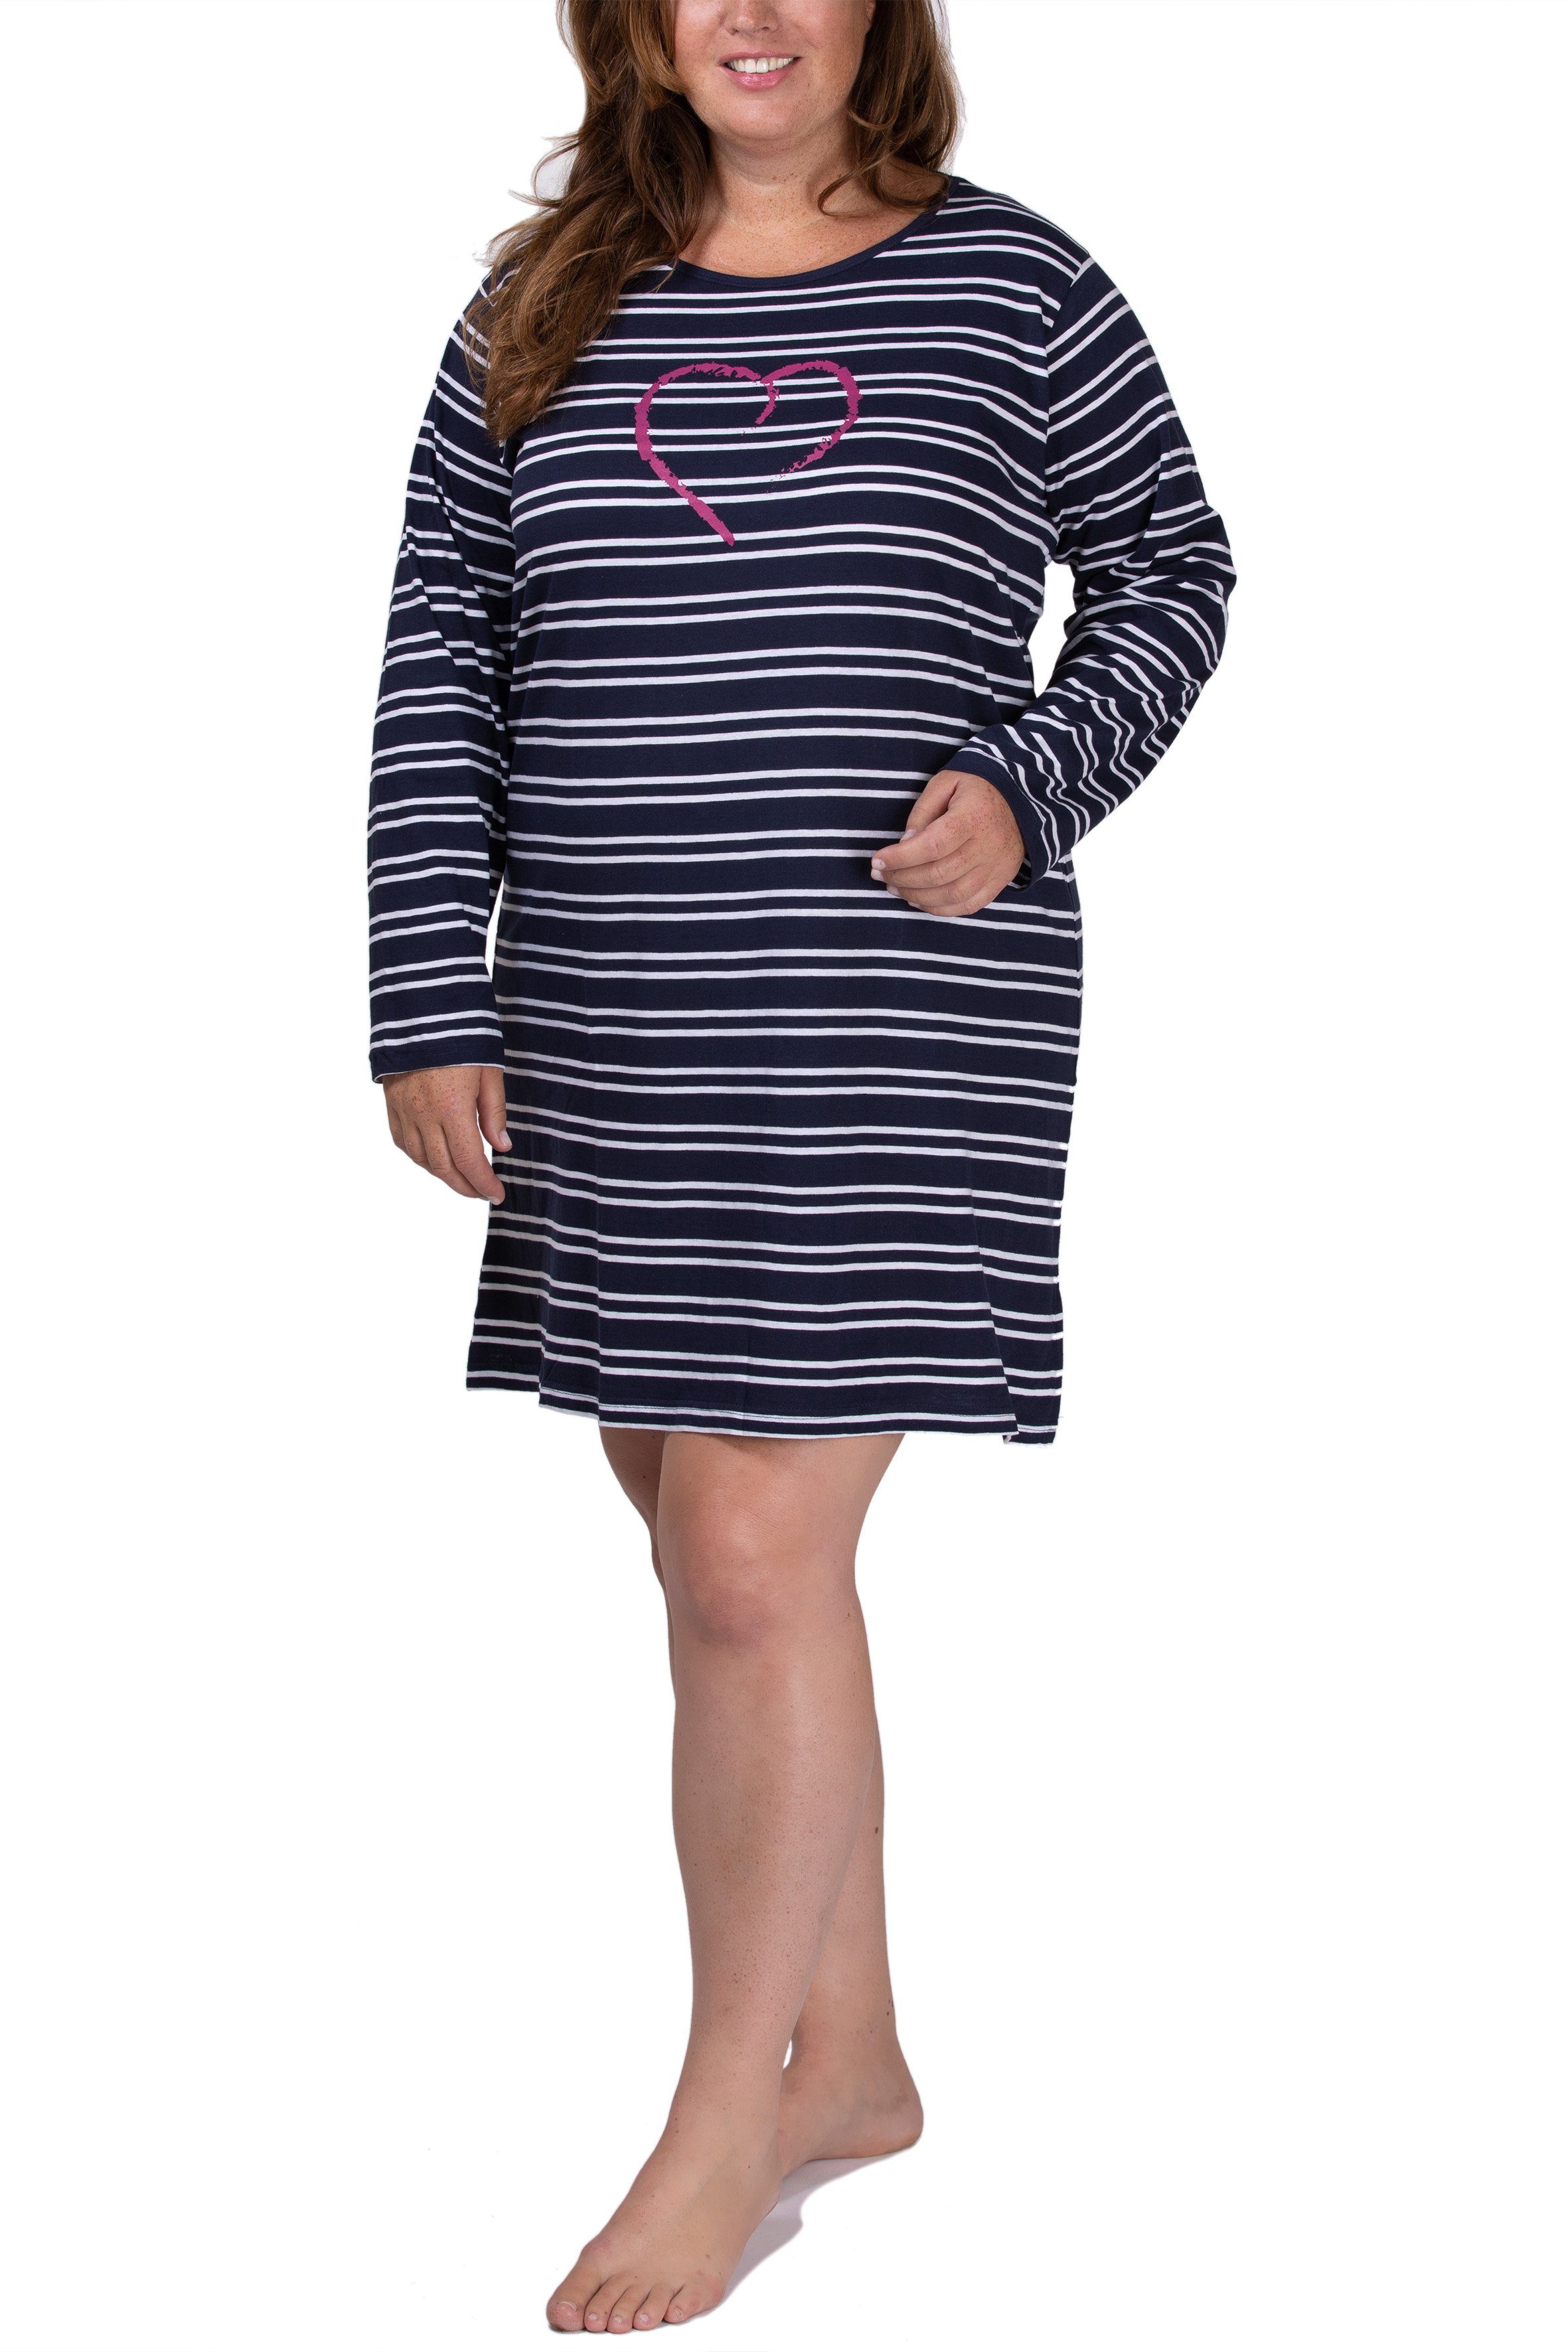 Baumwolle 4XL 100% navy Damen S Sleepshirt aus Sleepshirt Nachthemd - Moonline Größe kurz von